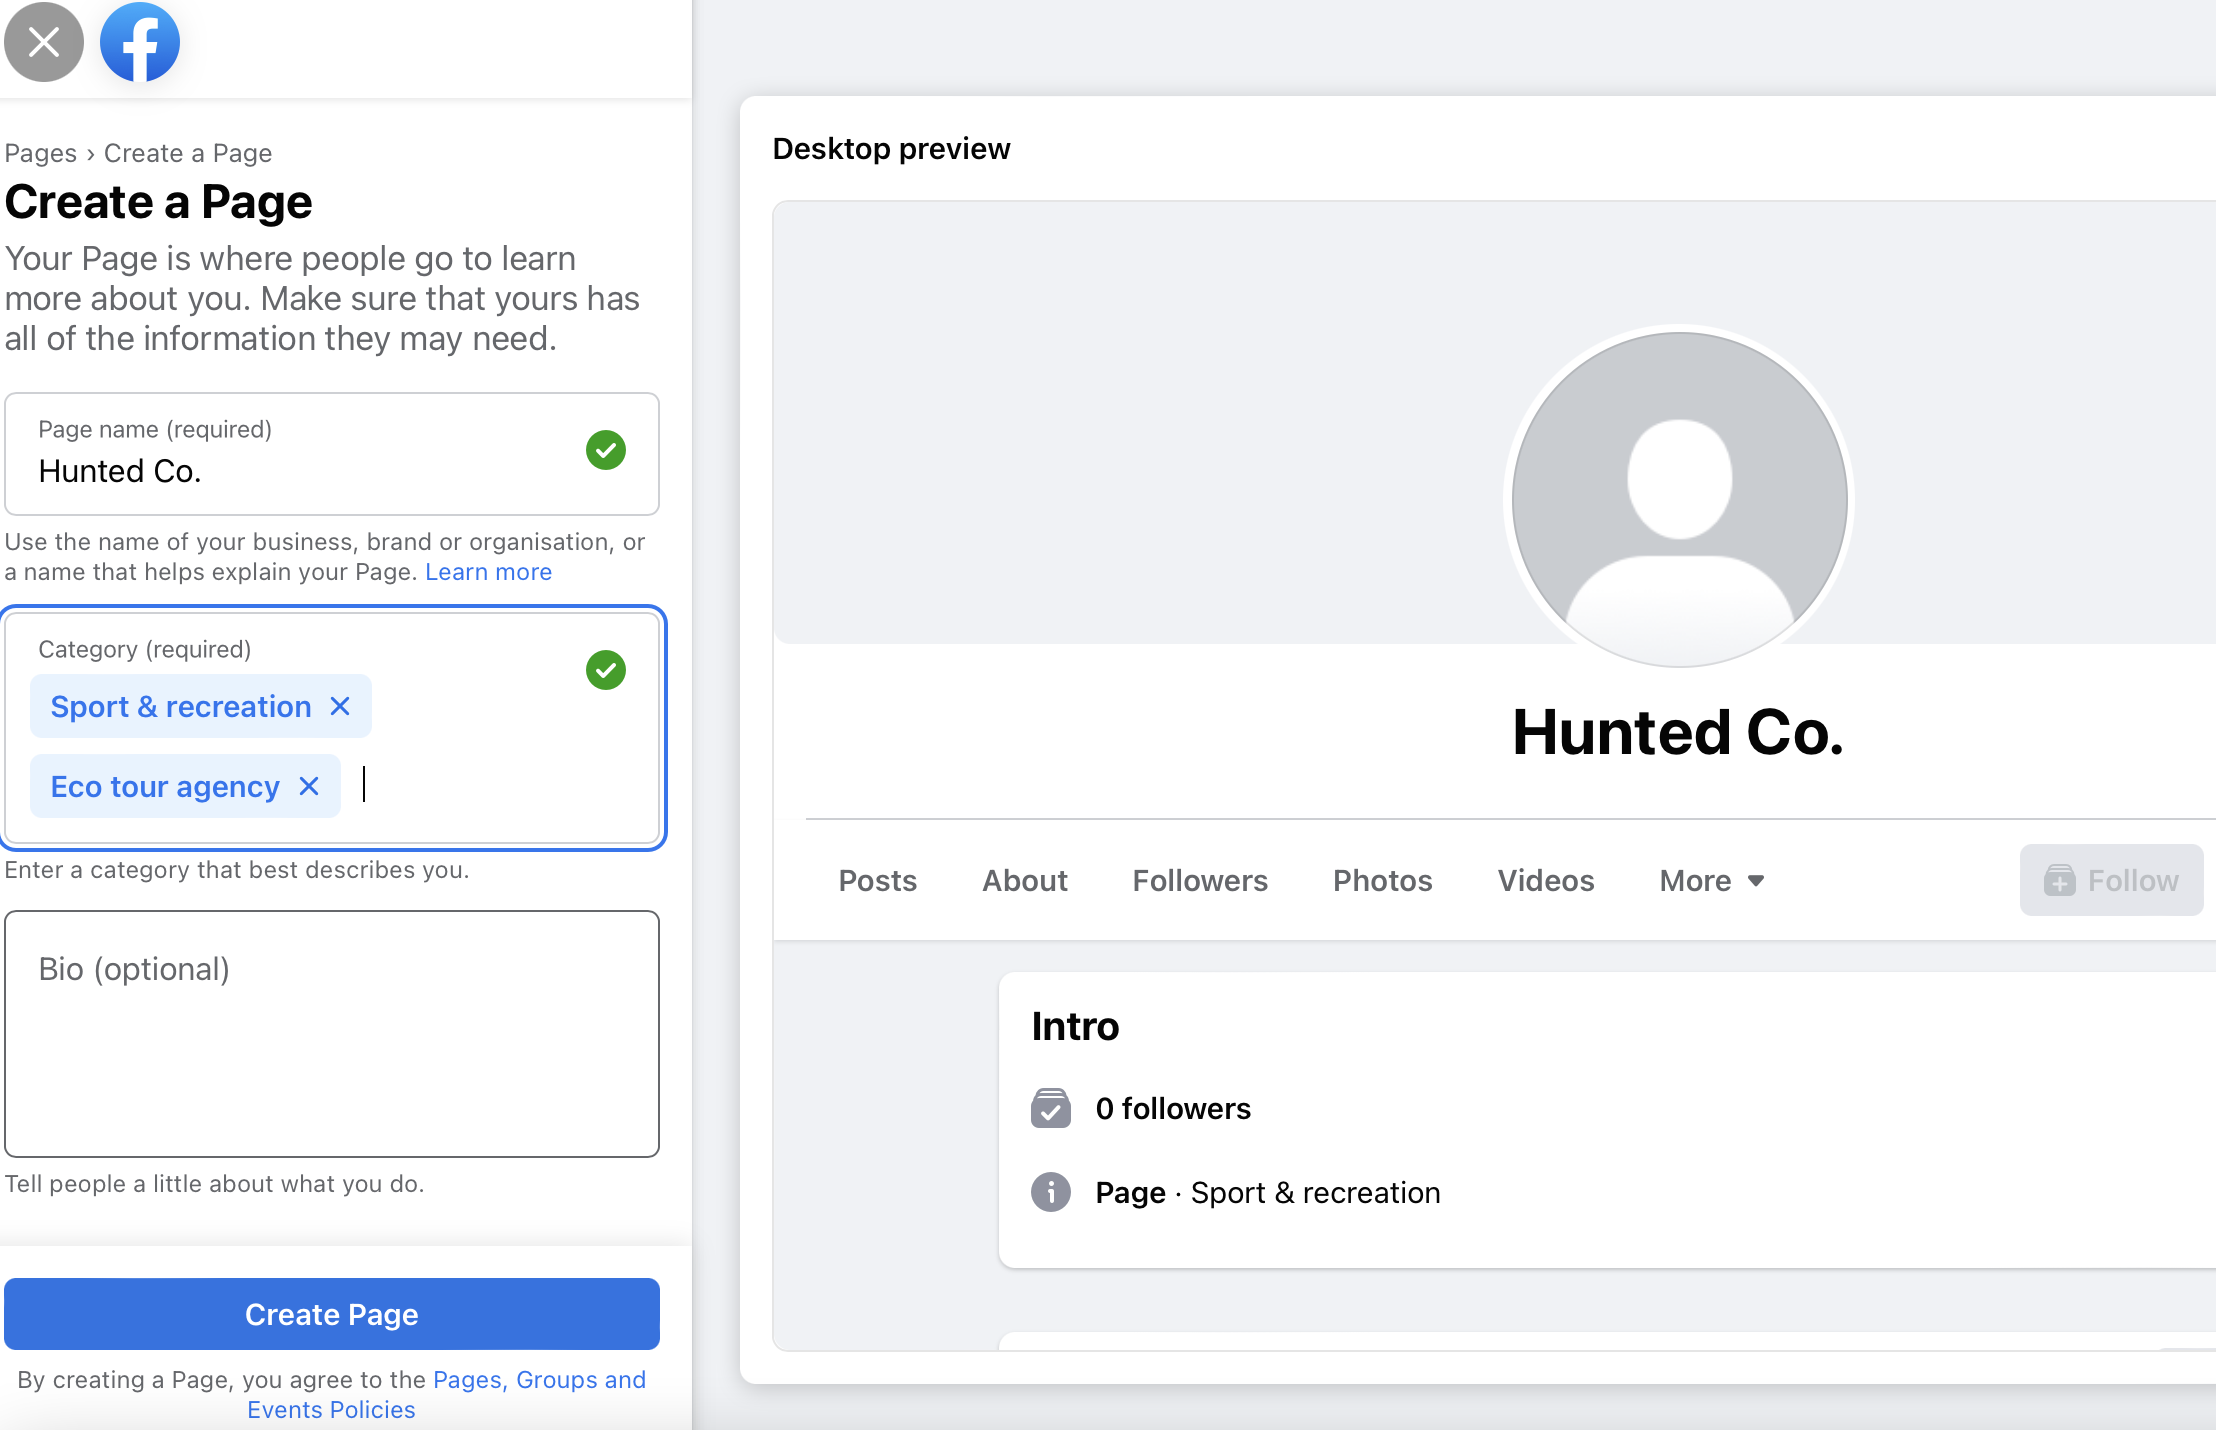 اولین مرحله از فرآیند ایجاد صفحه کسب و کار فیس بوک با فیلدهایی برای شامل نام صفحه و دسته بندی